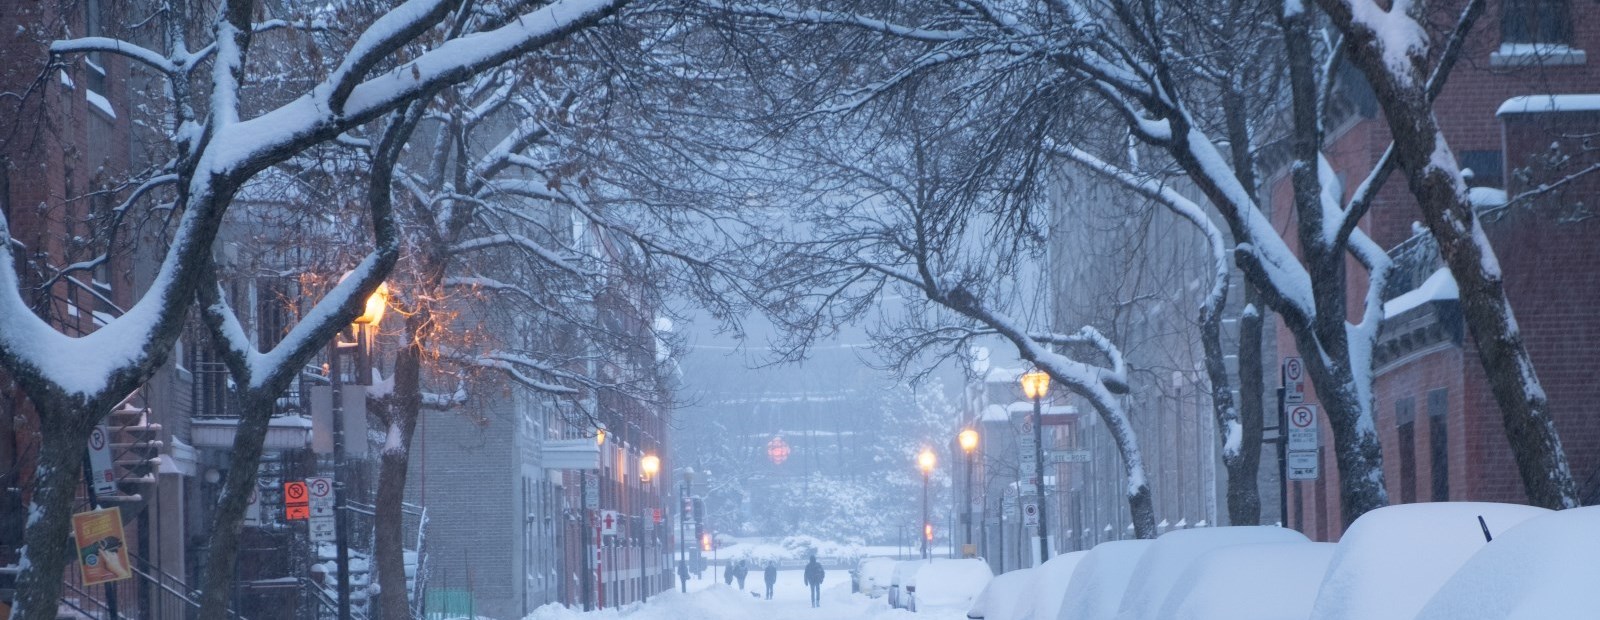 snowy winter street